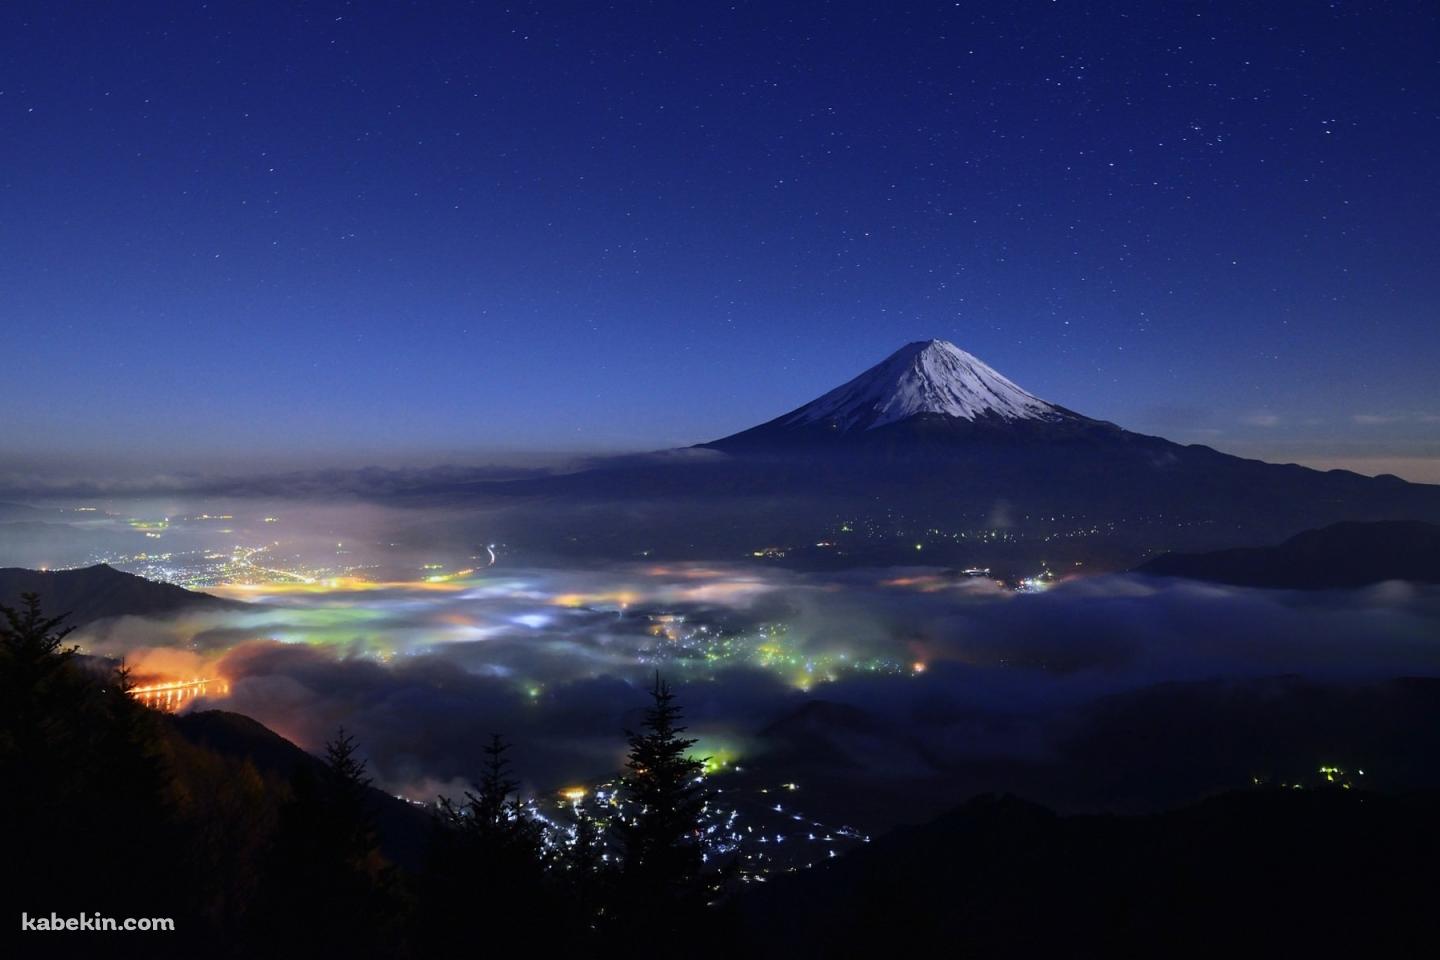 富士山と星空 日本 静岡県 山梨県の壁紙(1440px x 960px) 高画質 PC・デスクトップ用